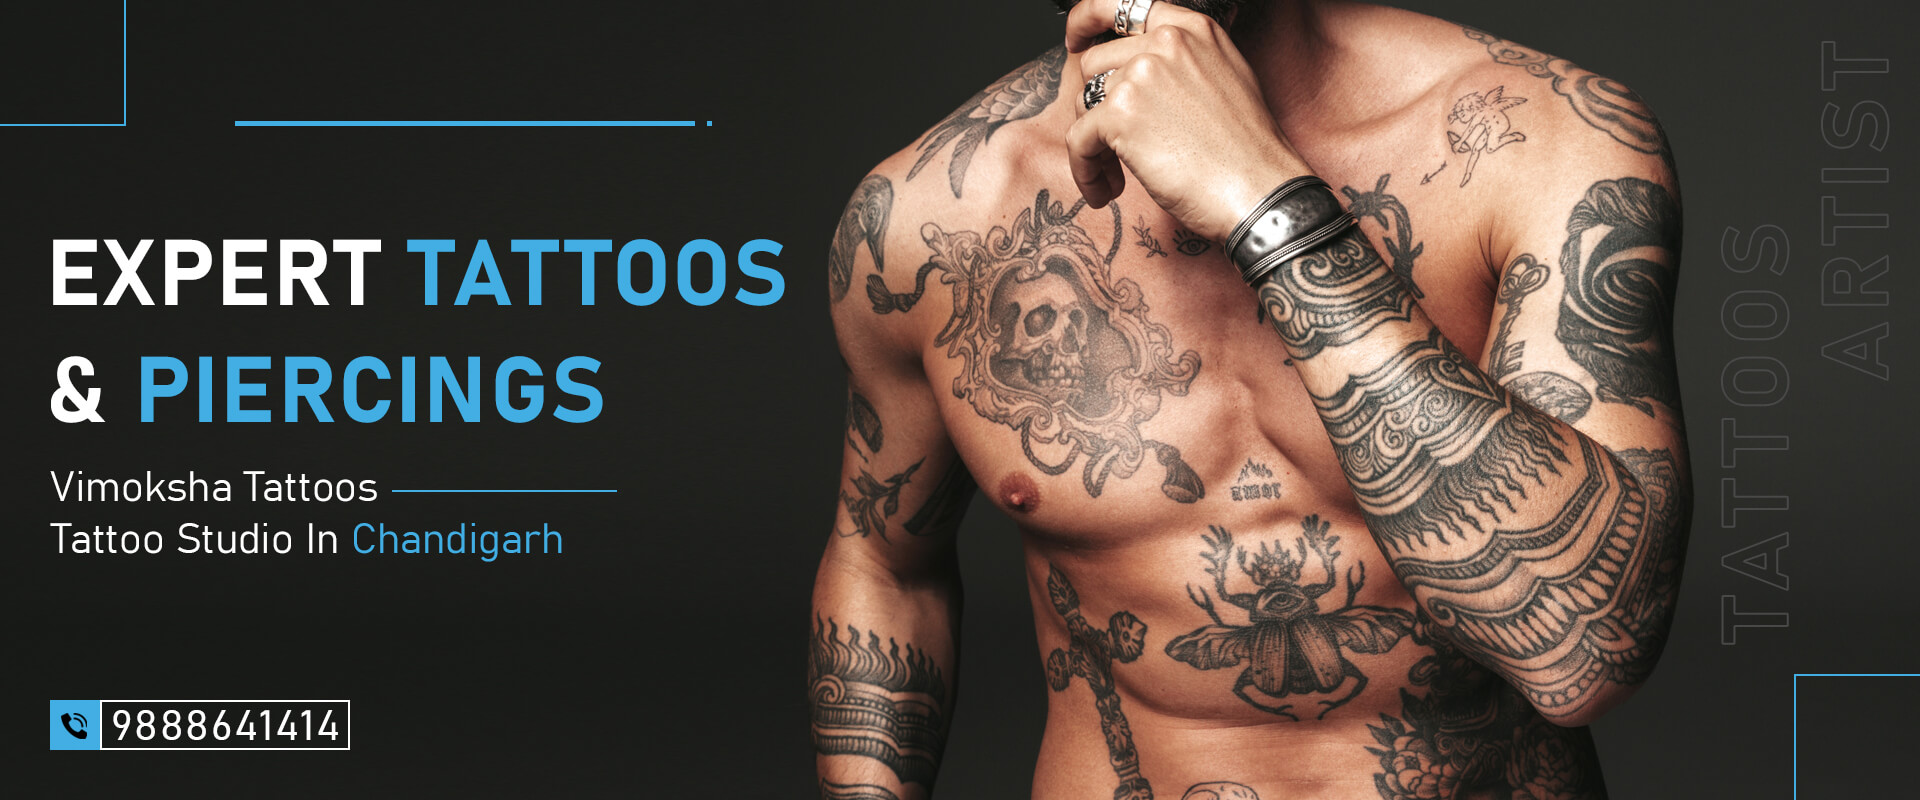 Tattoo in Chandigarh: Art, Expression, and Vimoksha Tattoos - vimokshatattoos